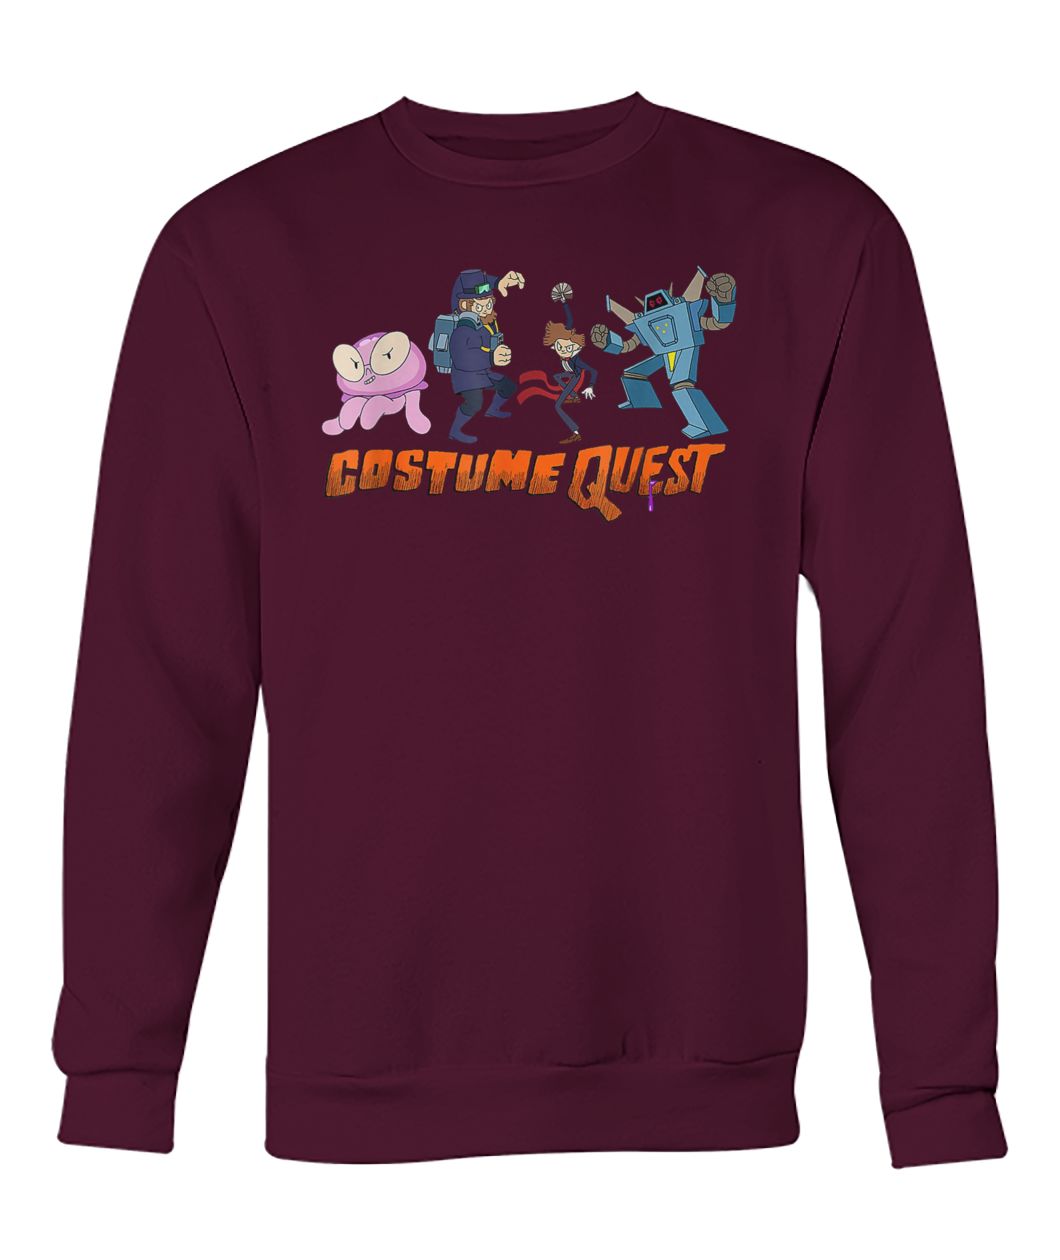 Costume quest cartoon heros crew neck sweatshirt